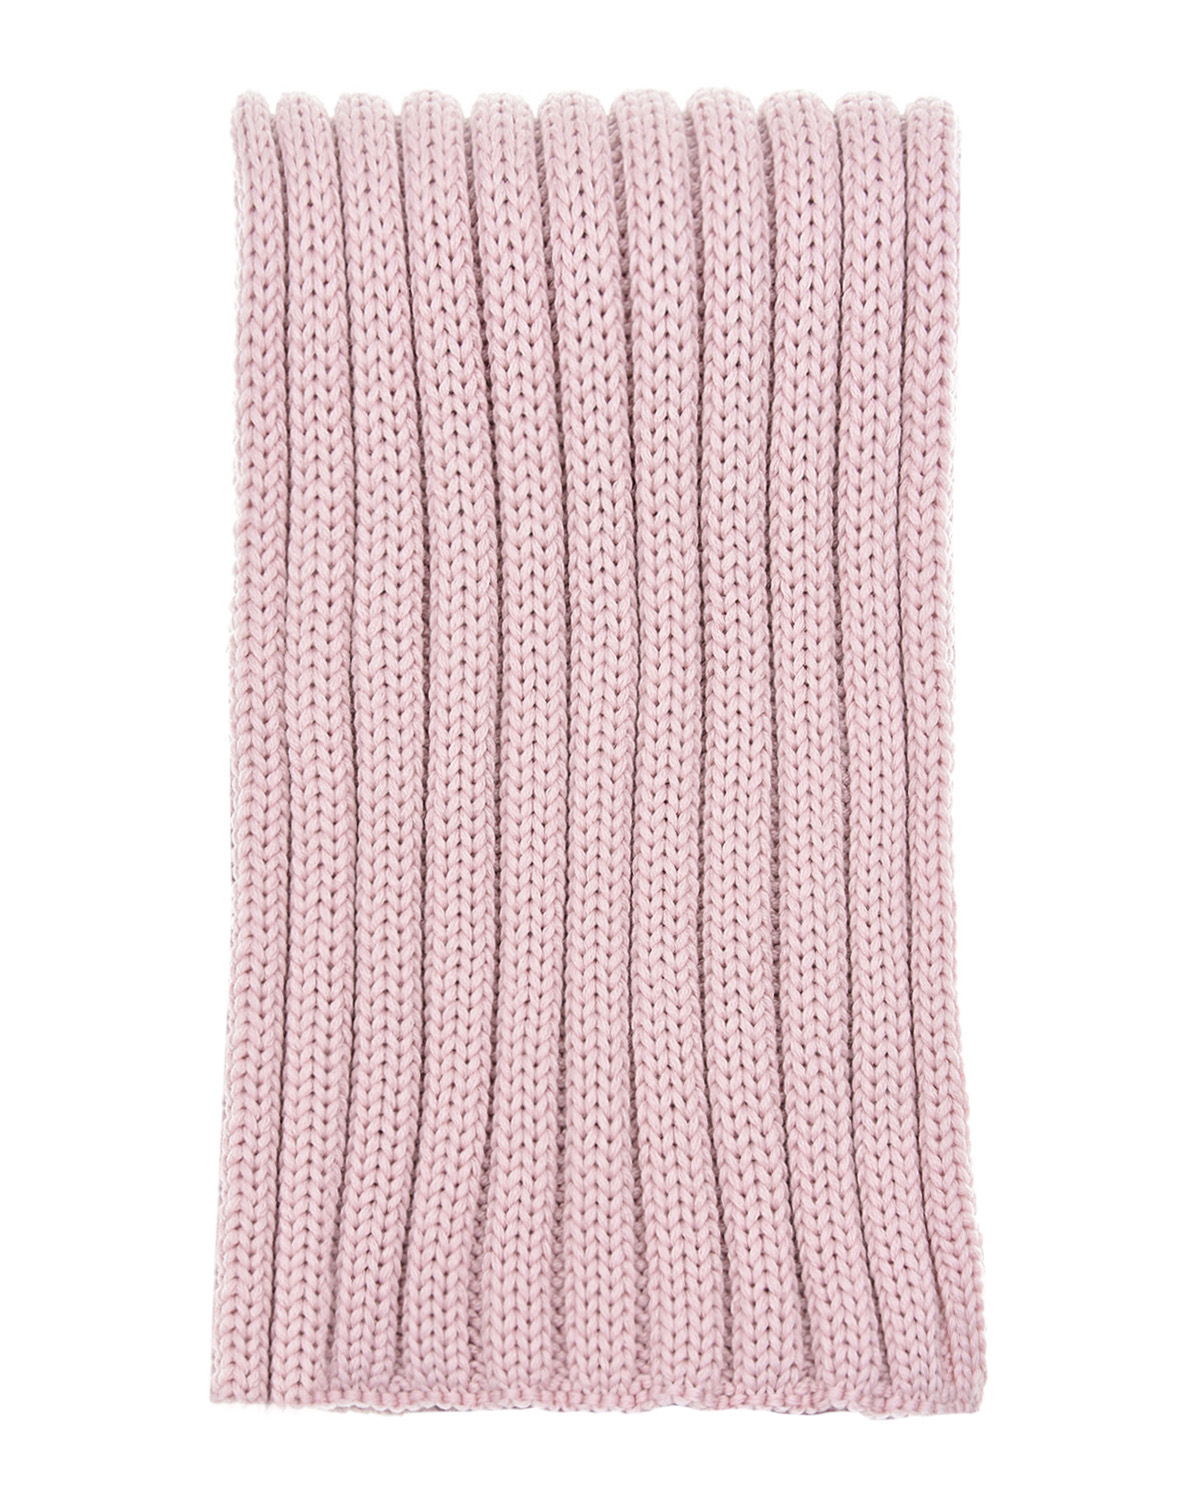 Розовый шерстяной шарф Catya детский, размер unica - фото 2